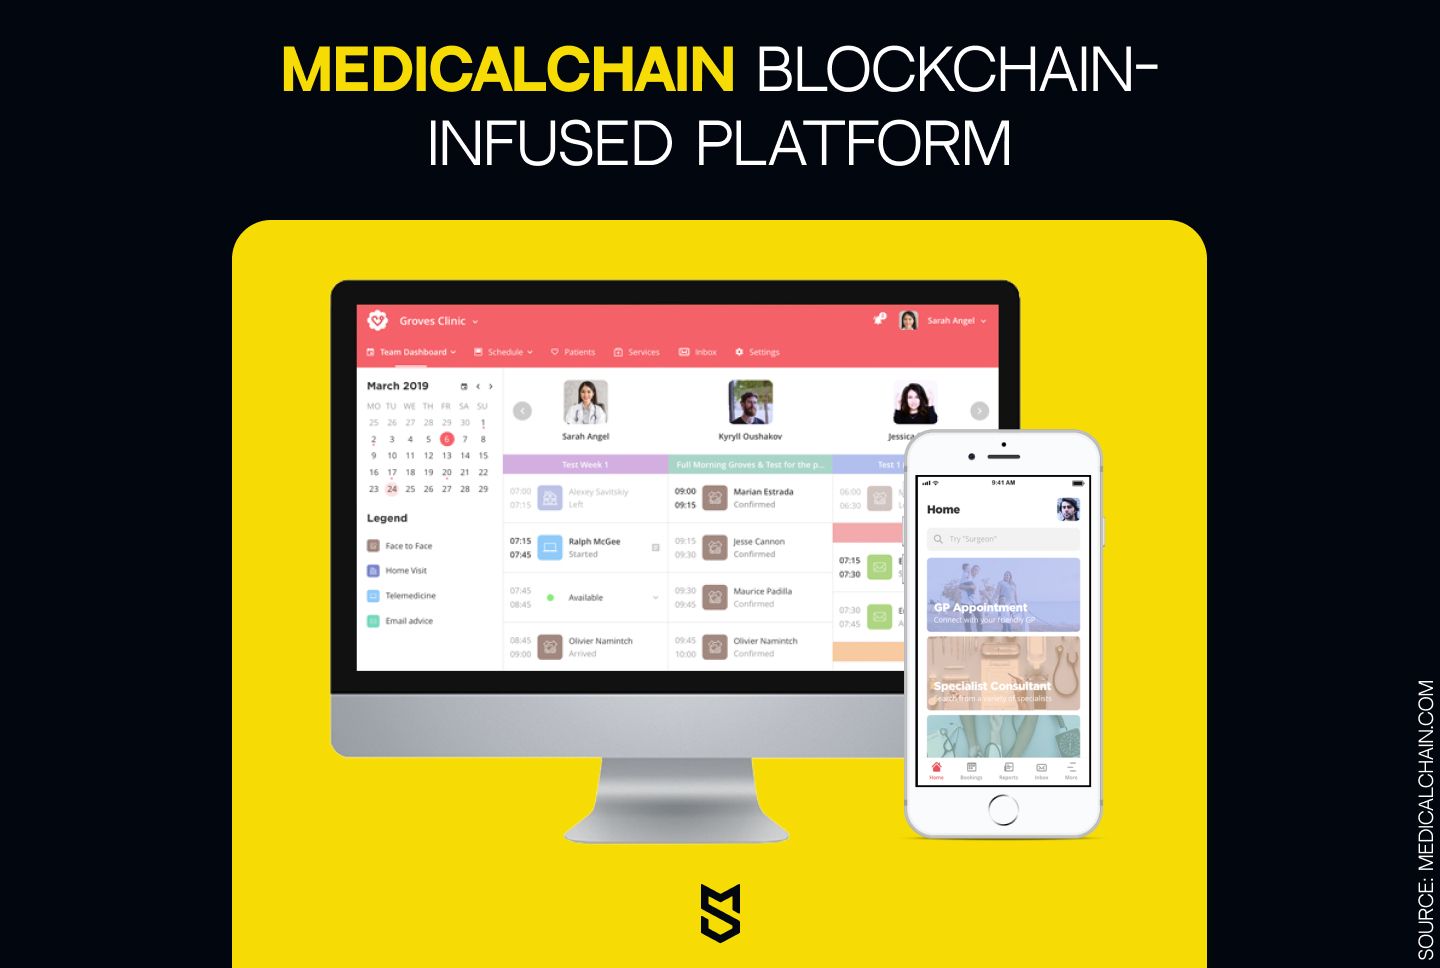 Medicalchain blockchain-infused platform